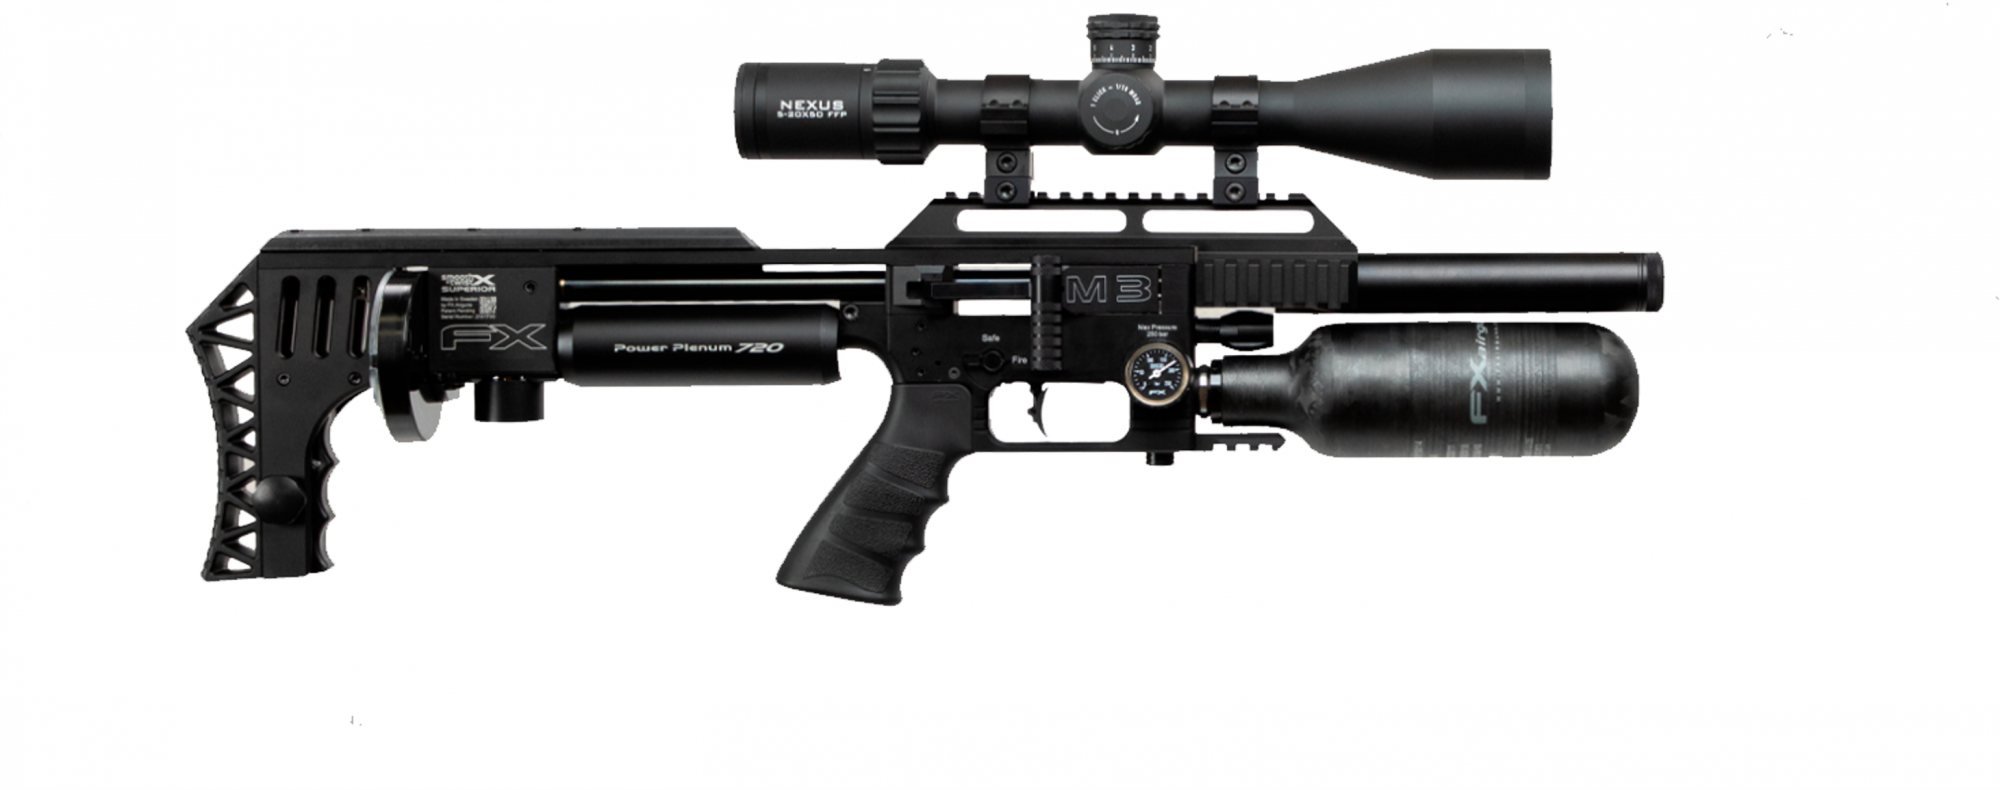 Fx Airguns Fx Impact M3 Black Compact Pcp Air Rifle Rifleman Firearms 7427